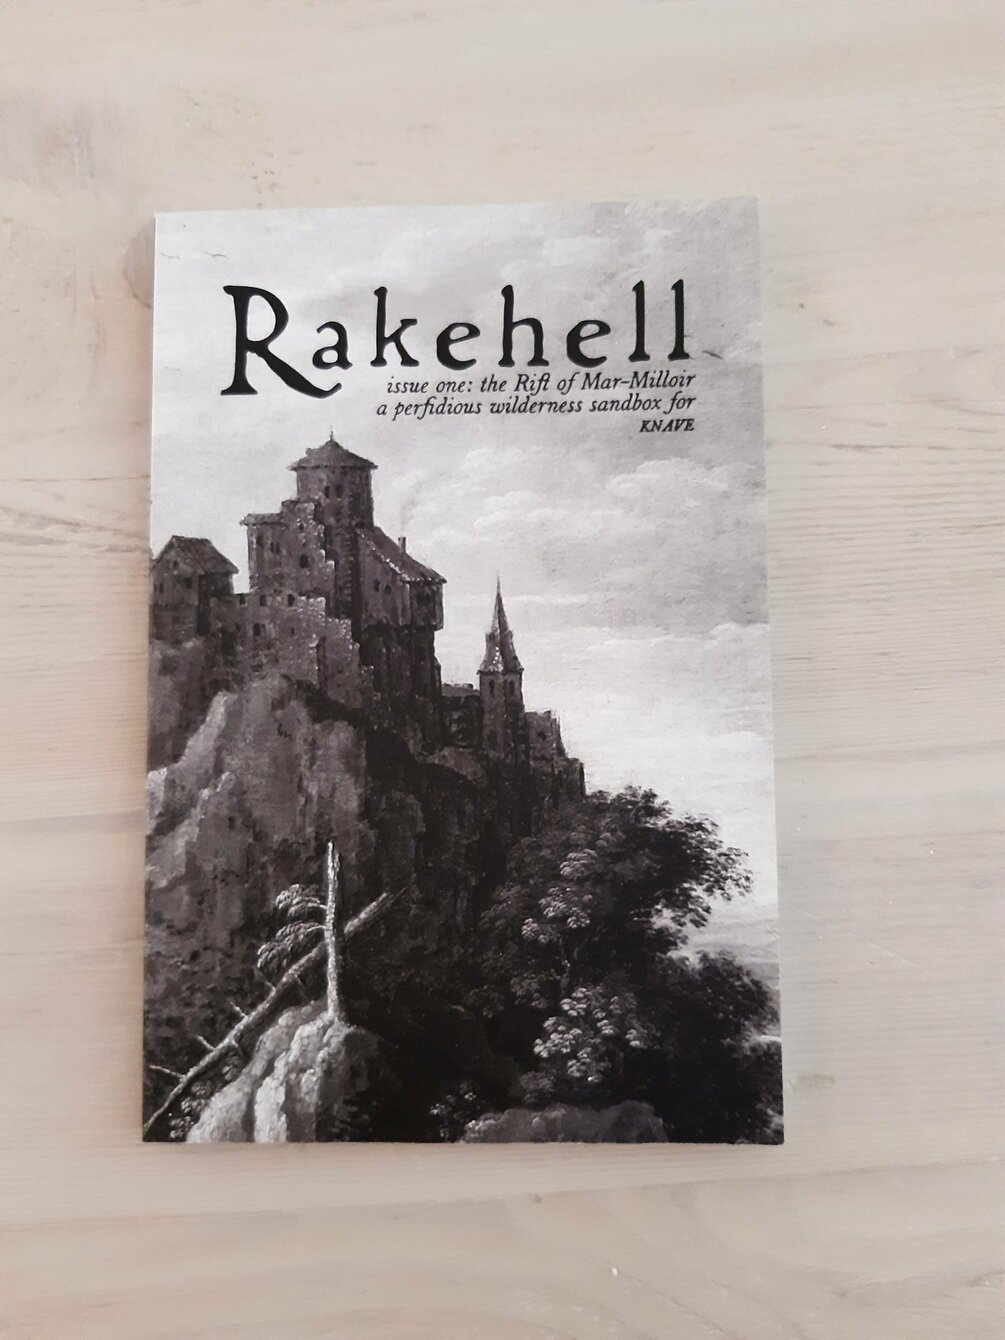 Rakehell: Issue 1 - The Rift of Mar-Milloir